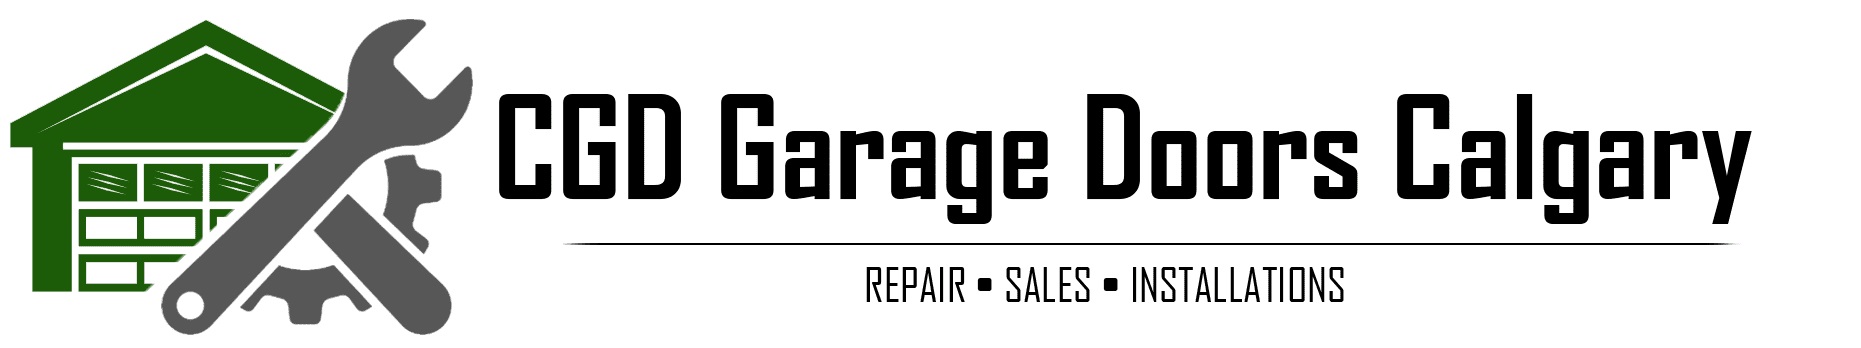 CGD Garage Doors Calgary